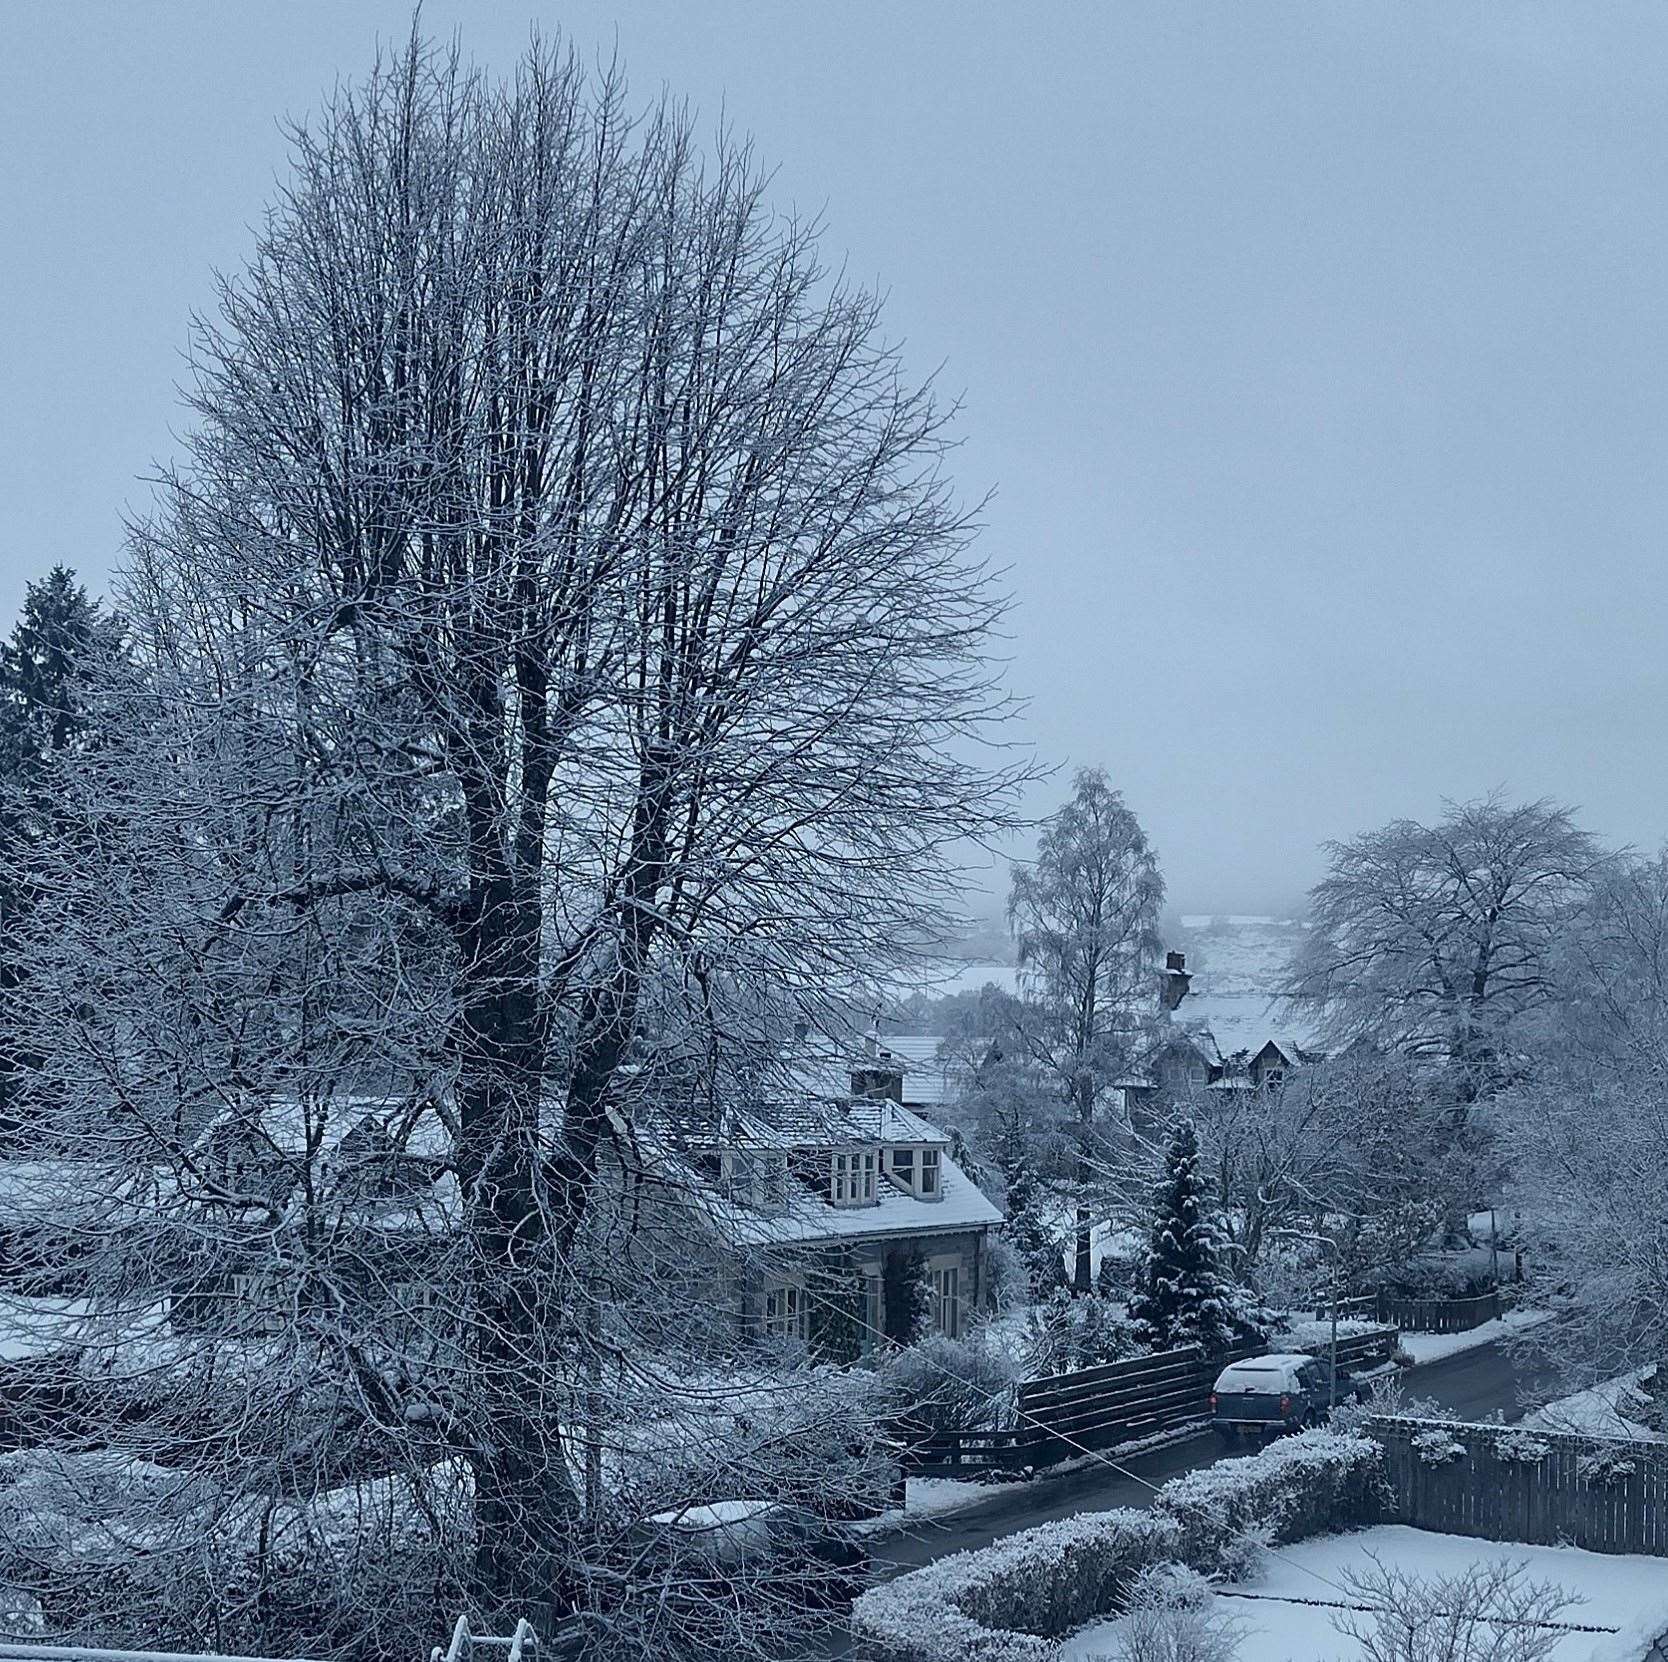 Snowy roads in Badenoch today